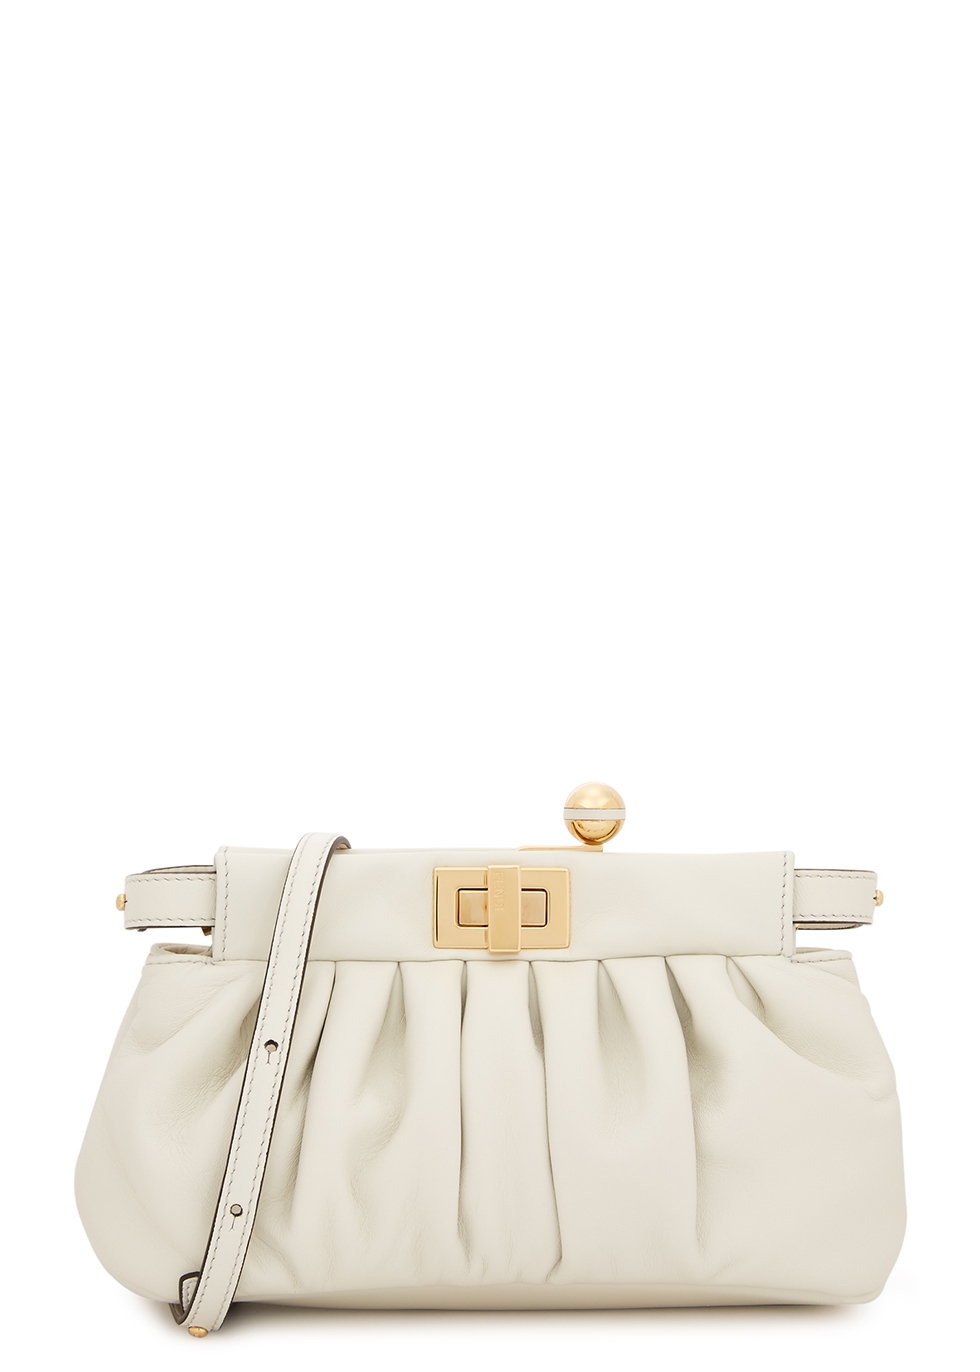 fendi white handbag